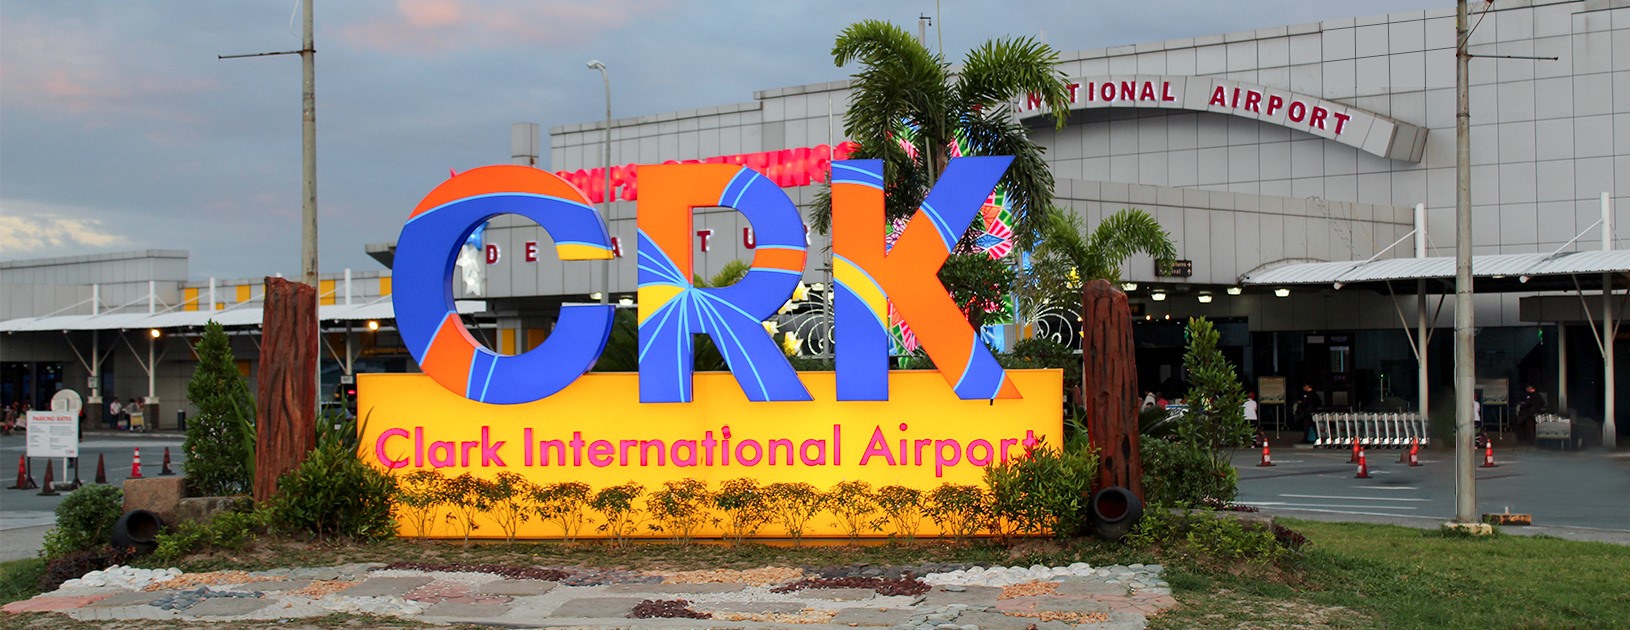 clark international airport jobs